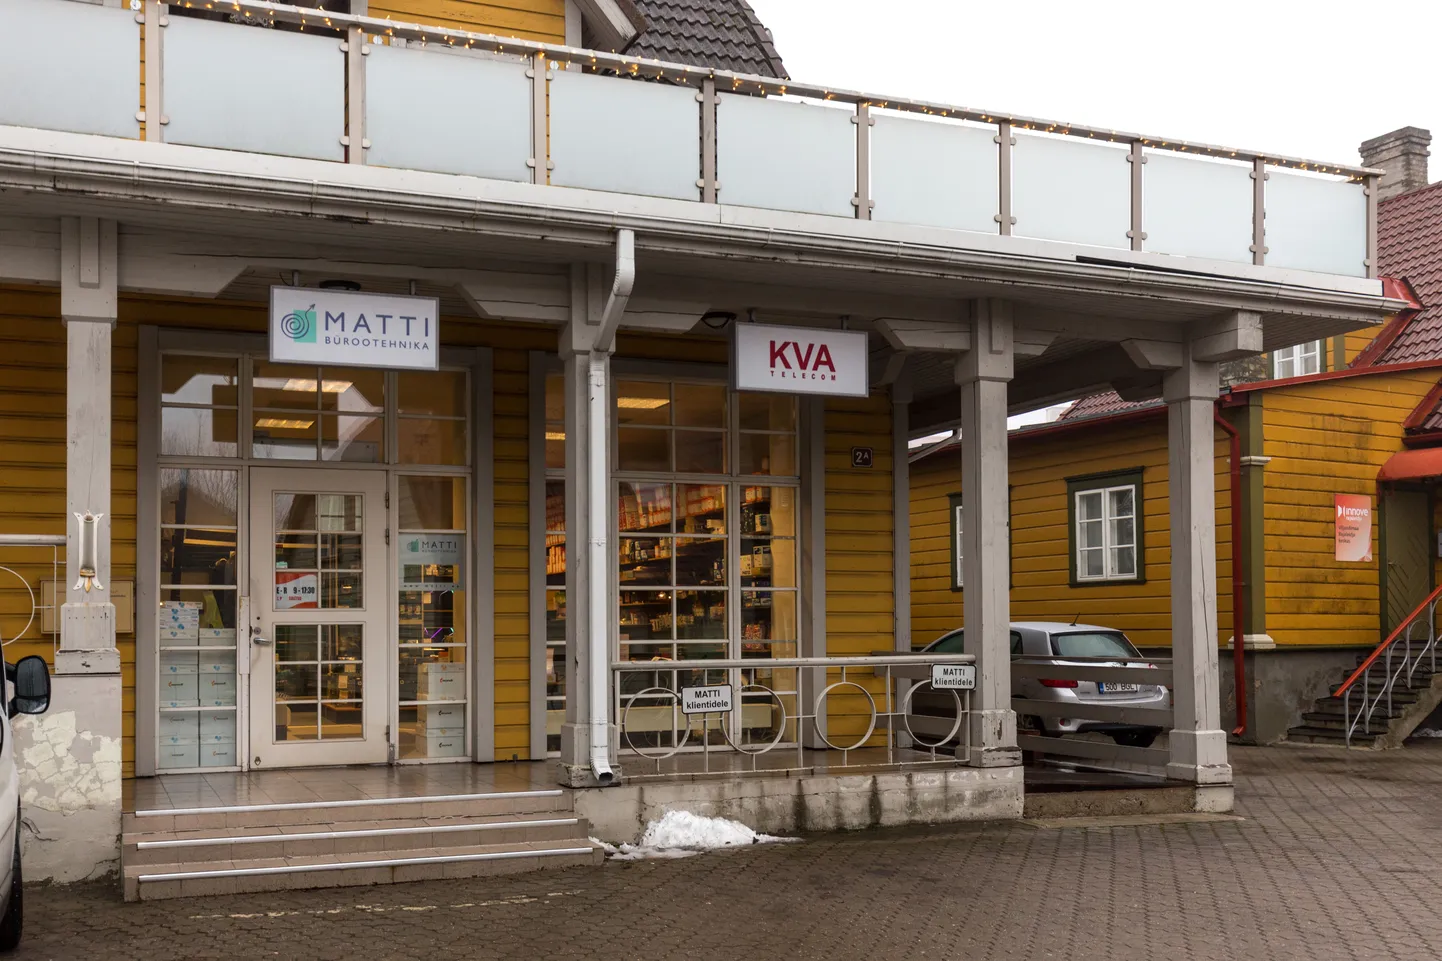 Silt Tallinna tänava sisehoovis asuva ärimaja fassaadil annab teada, et seal asub ettevõte KVA Telecom.